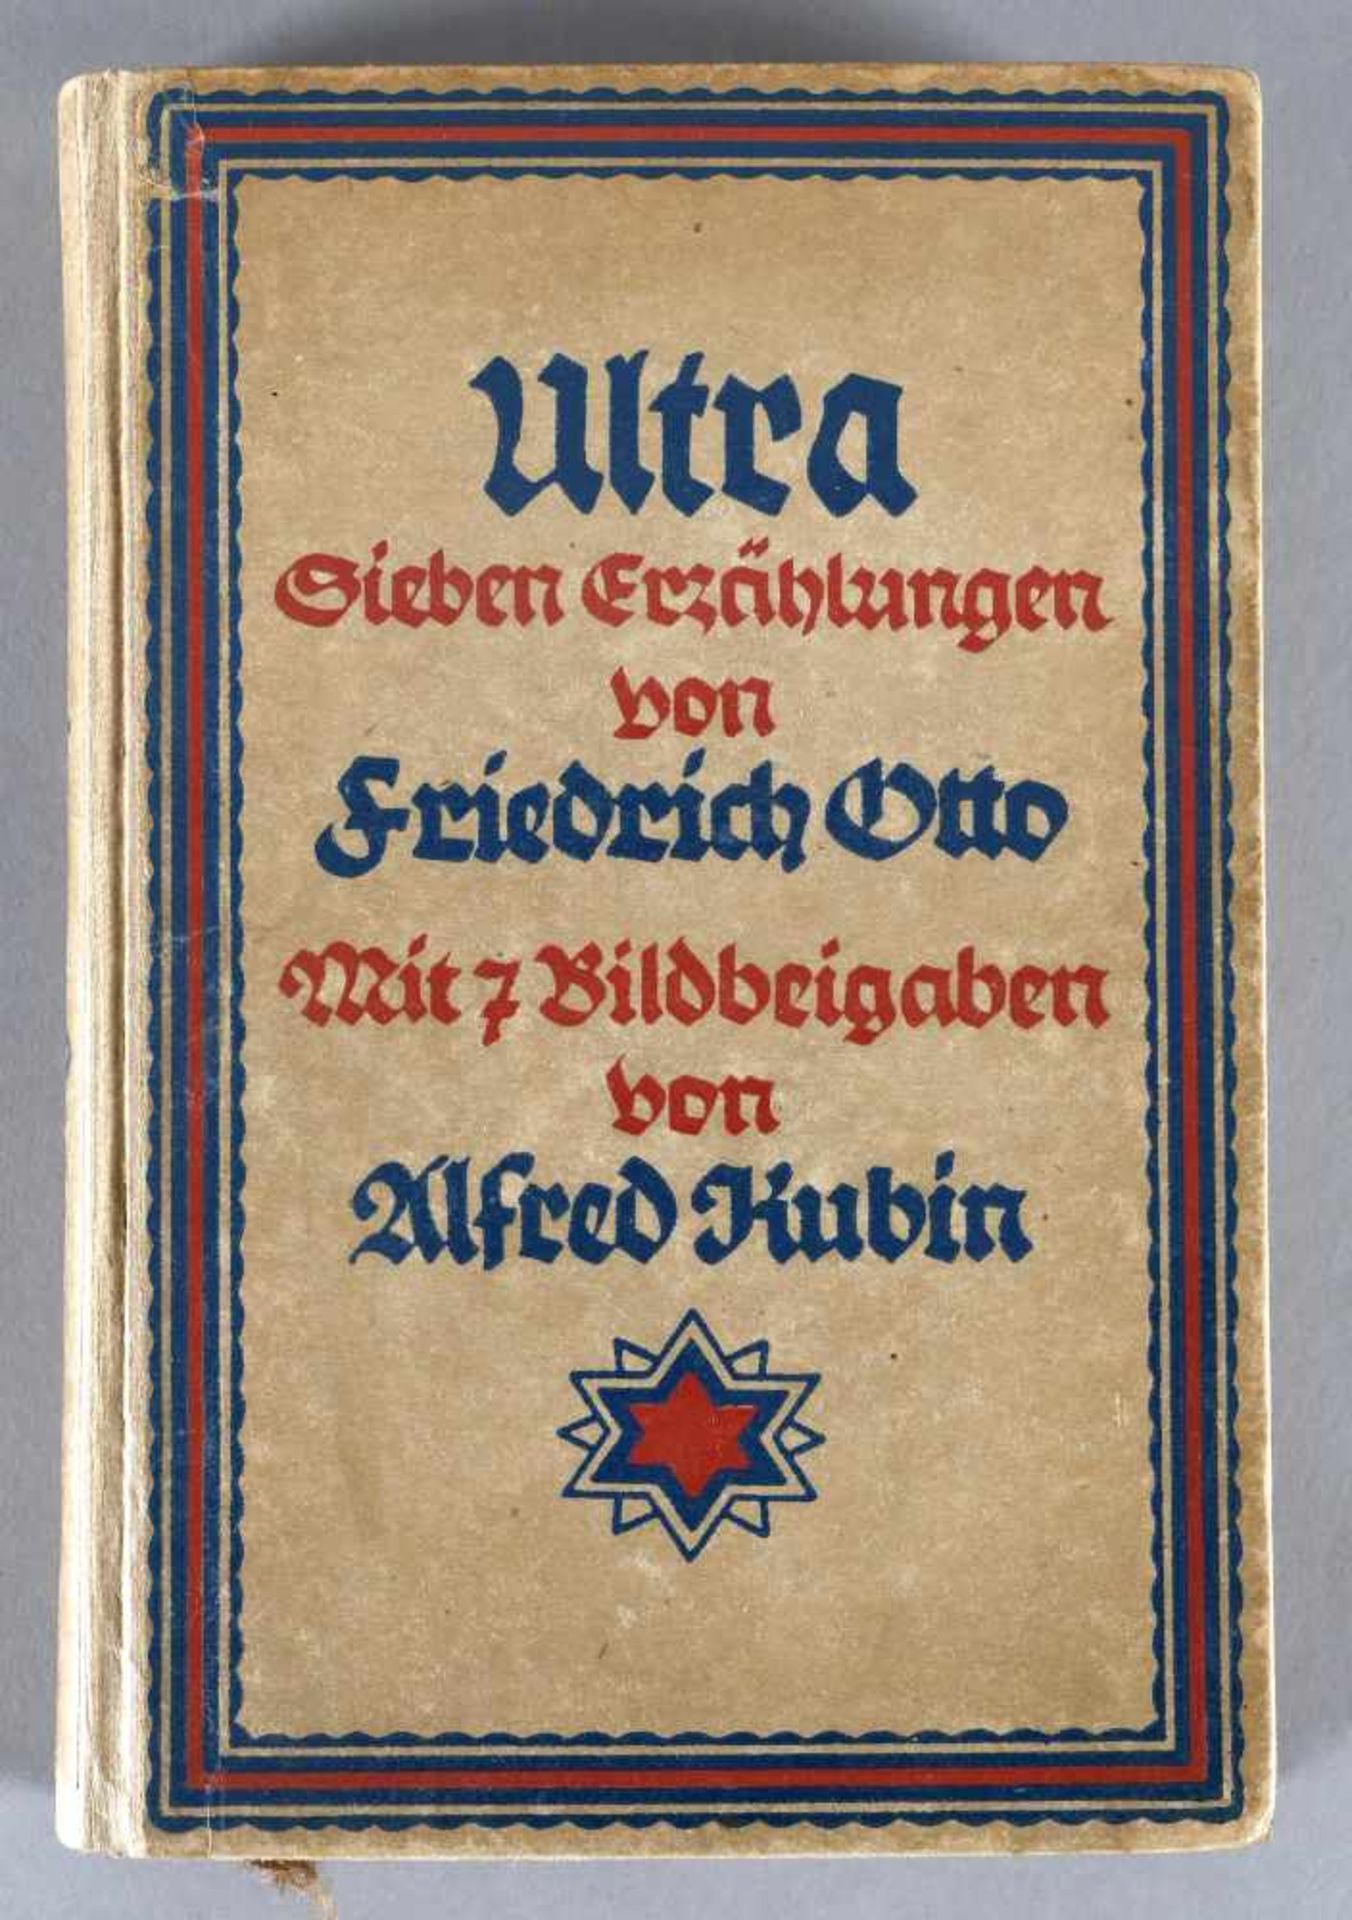 Friedrich Otto, Ultra, mit 7 Bildbeigaben von Alfred Kubin, zweite Auflage, Georg Müller Verlag,